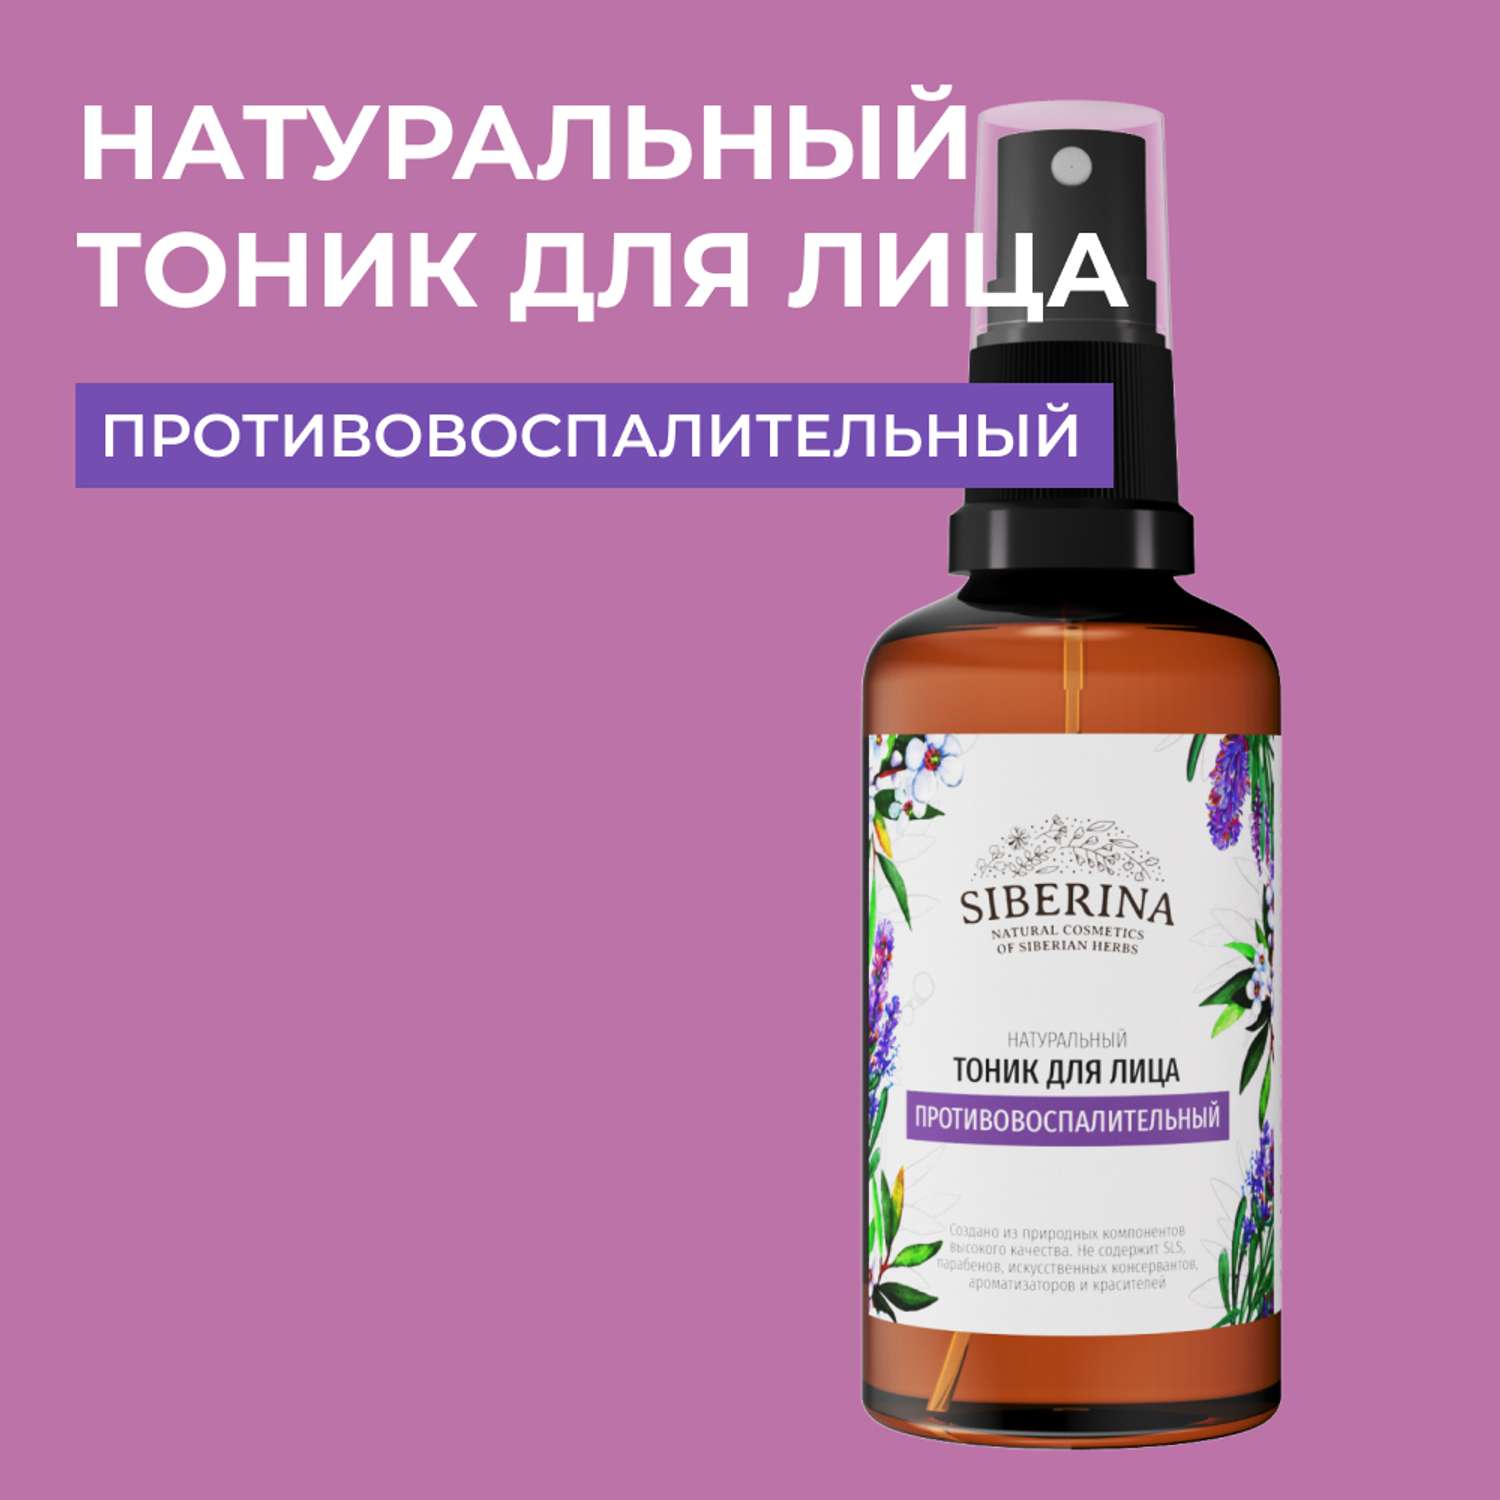 Тоник для лица Siberina натуральный «Противовоспалительный» с антисептическим действием 50 мл - фото 1